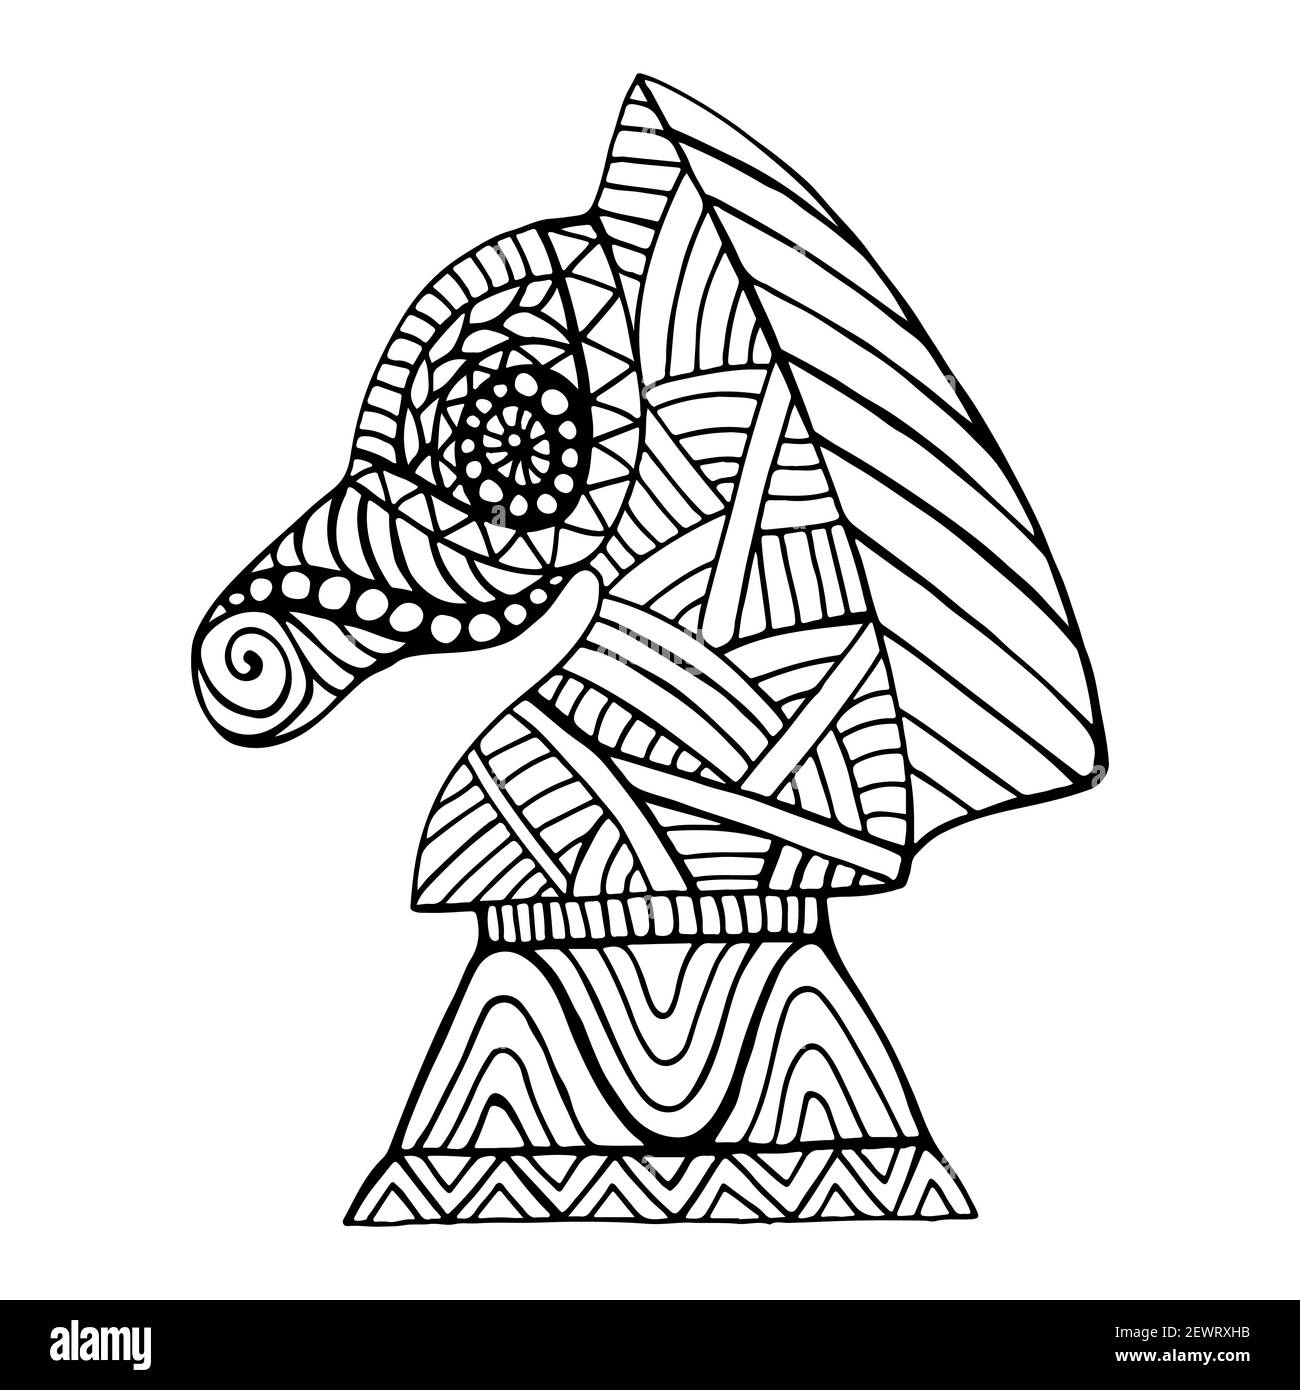 Pezzo a scacchi di cavallo con molti motivi decorativi in stile doodle libro da colorare per adulti e bambini, profilo in inchiostro nero isolato su bianco. Illustrazione Vettoriale